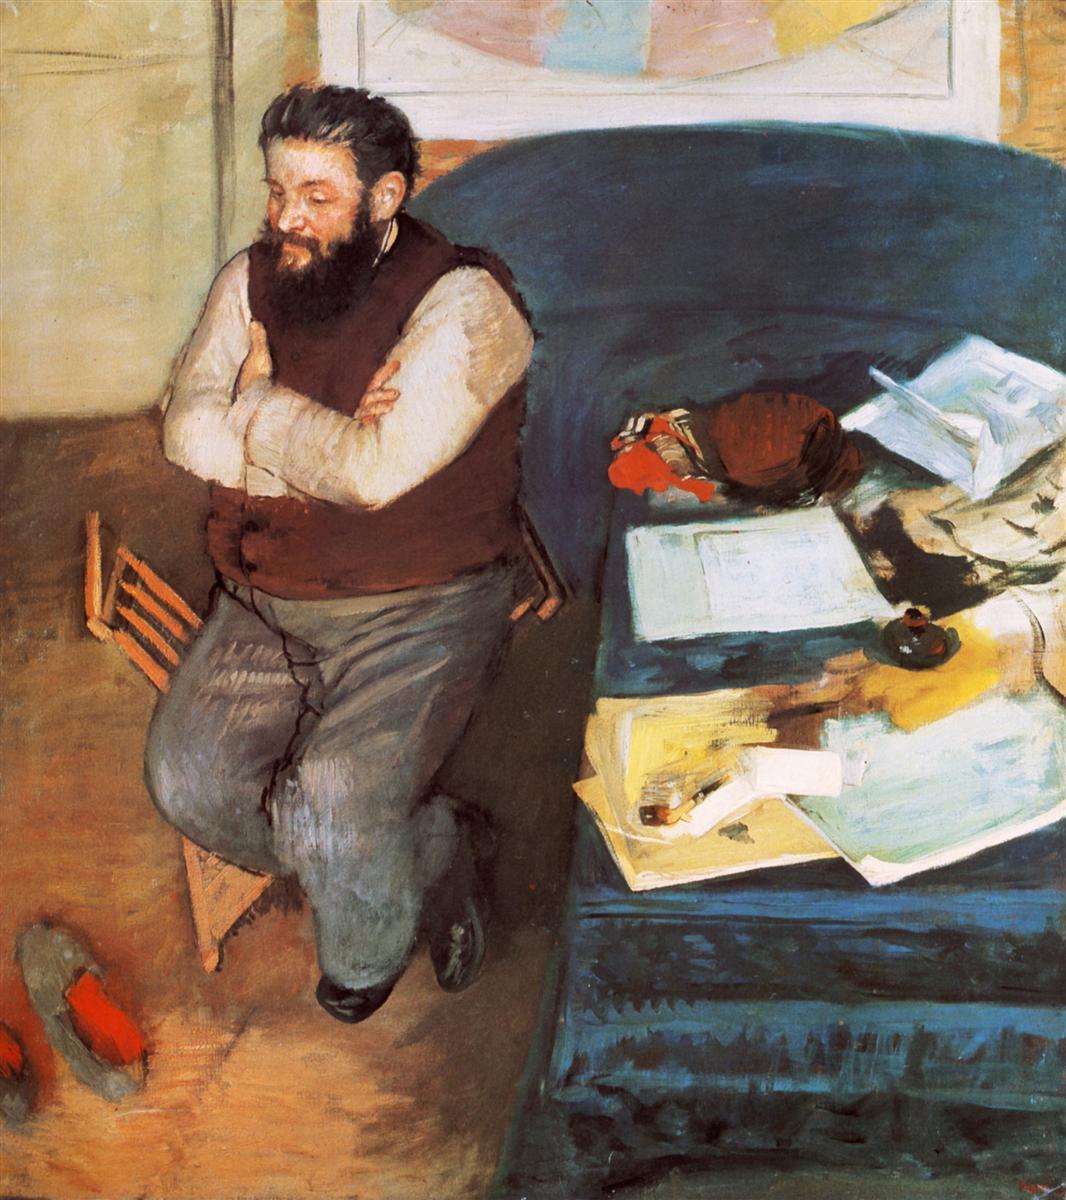 Edgar+Degas-1834-1917 (436).jpg